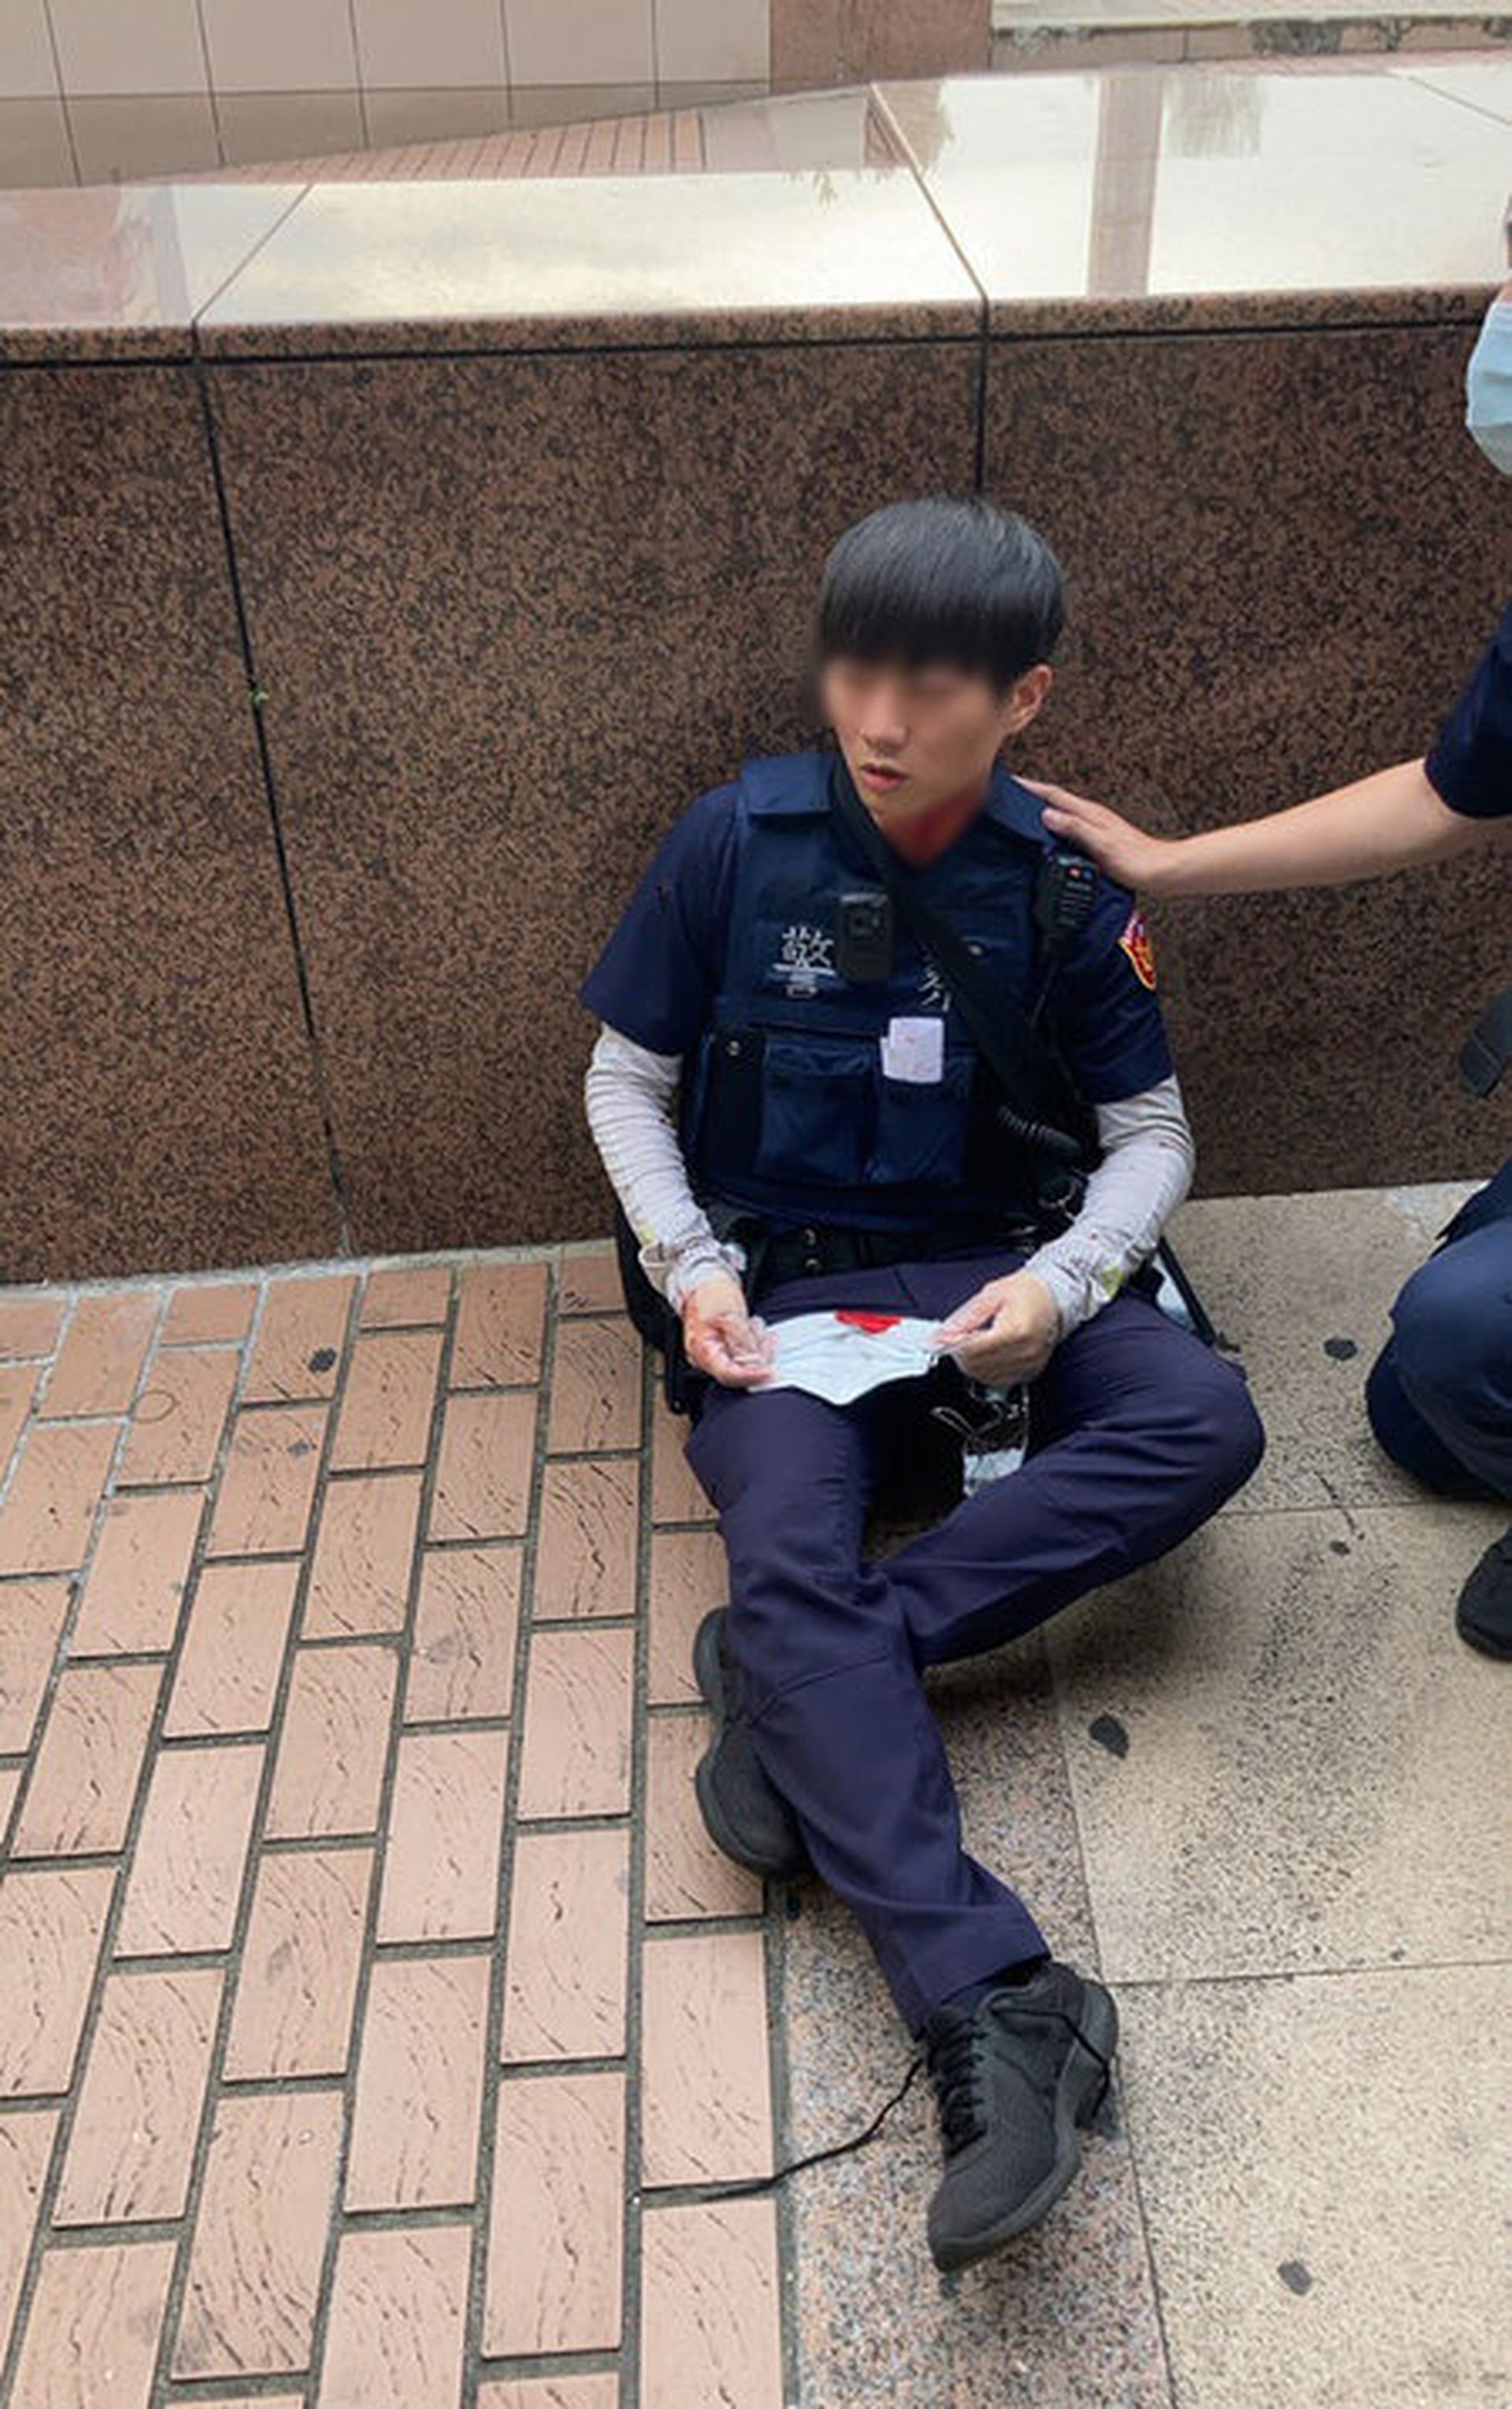 台湾疫情 男未戴口罩车站游荡遭盘查持刀砍伤两警员最终被制服 多维新闻 台湾